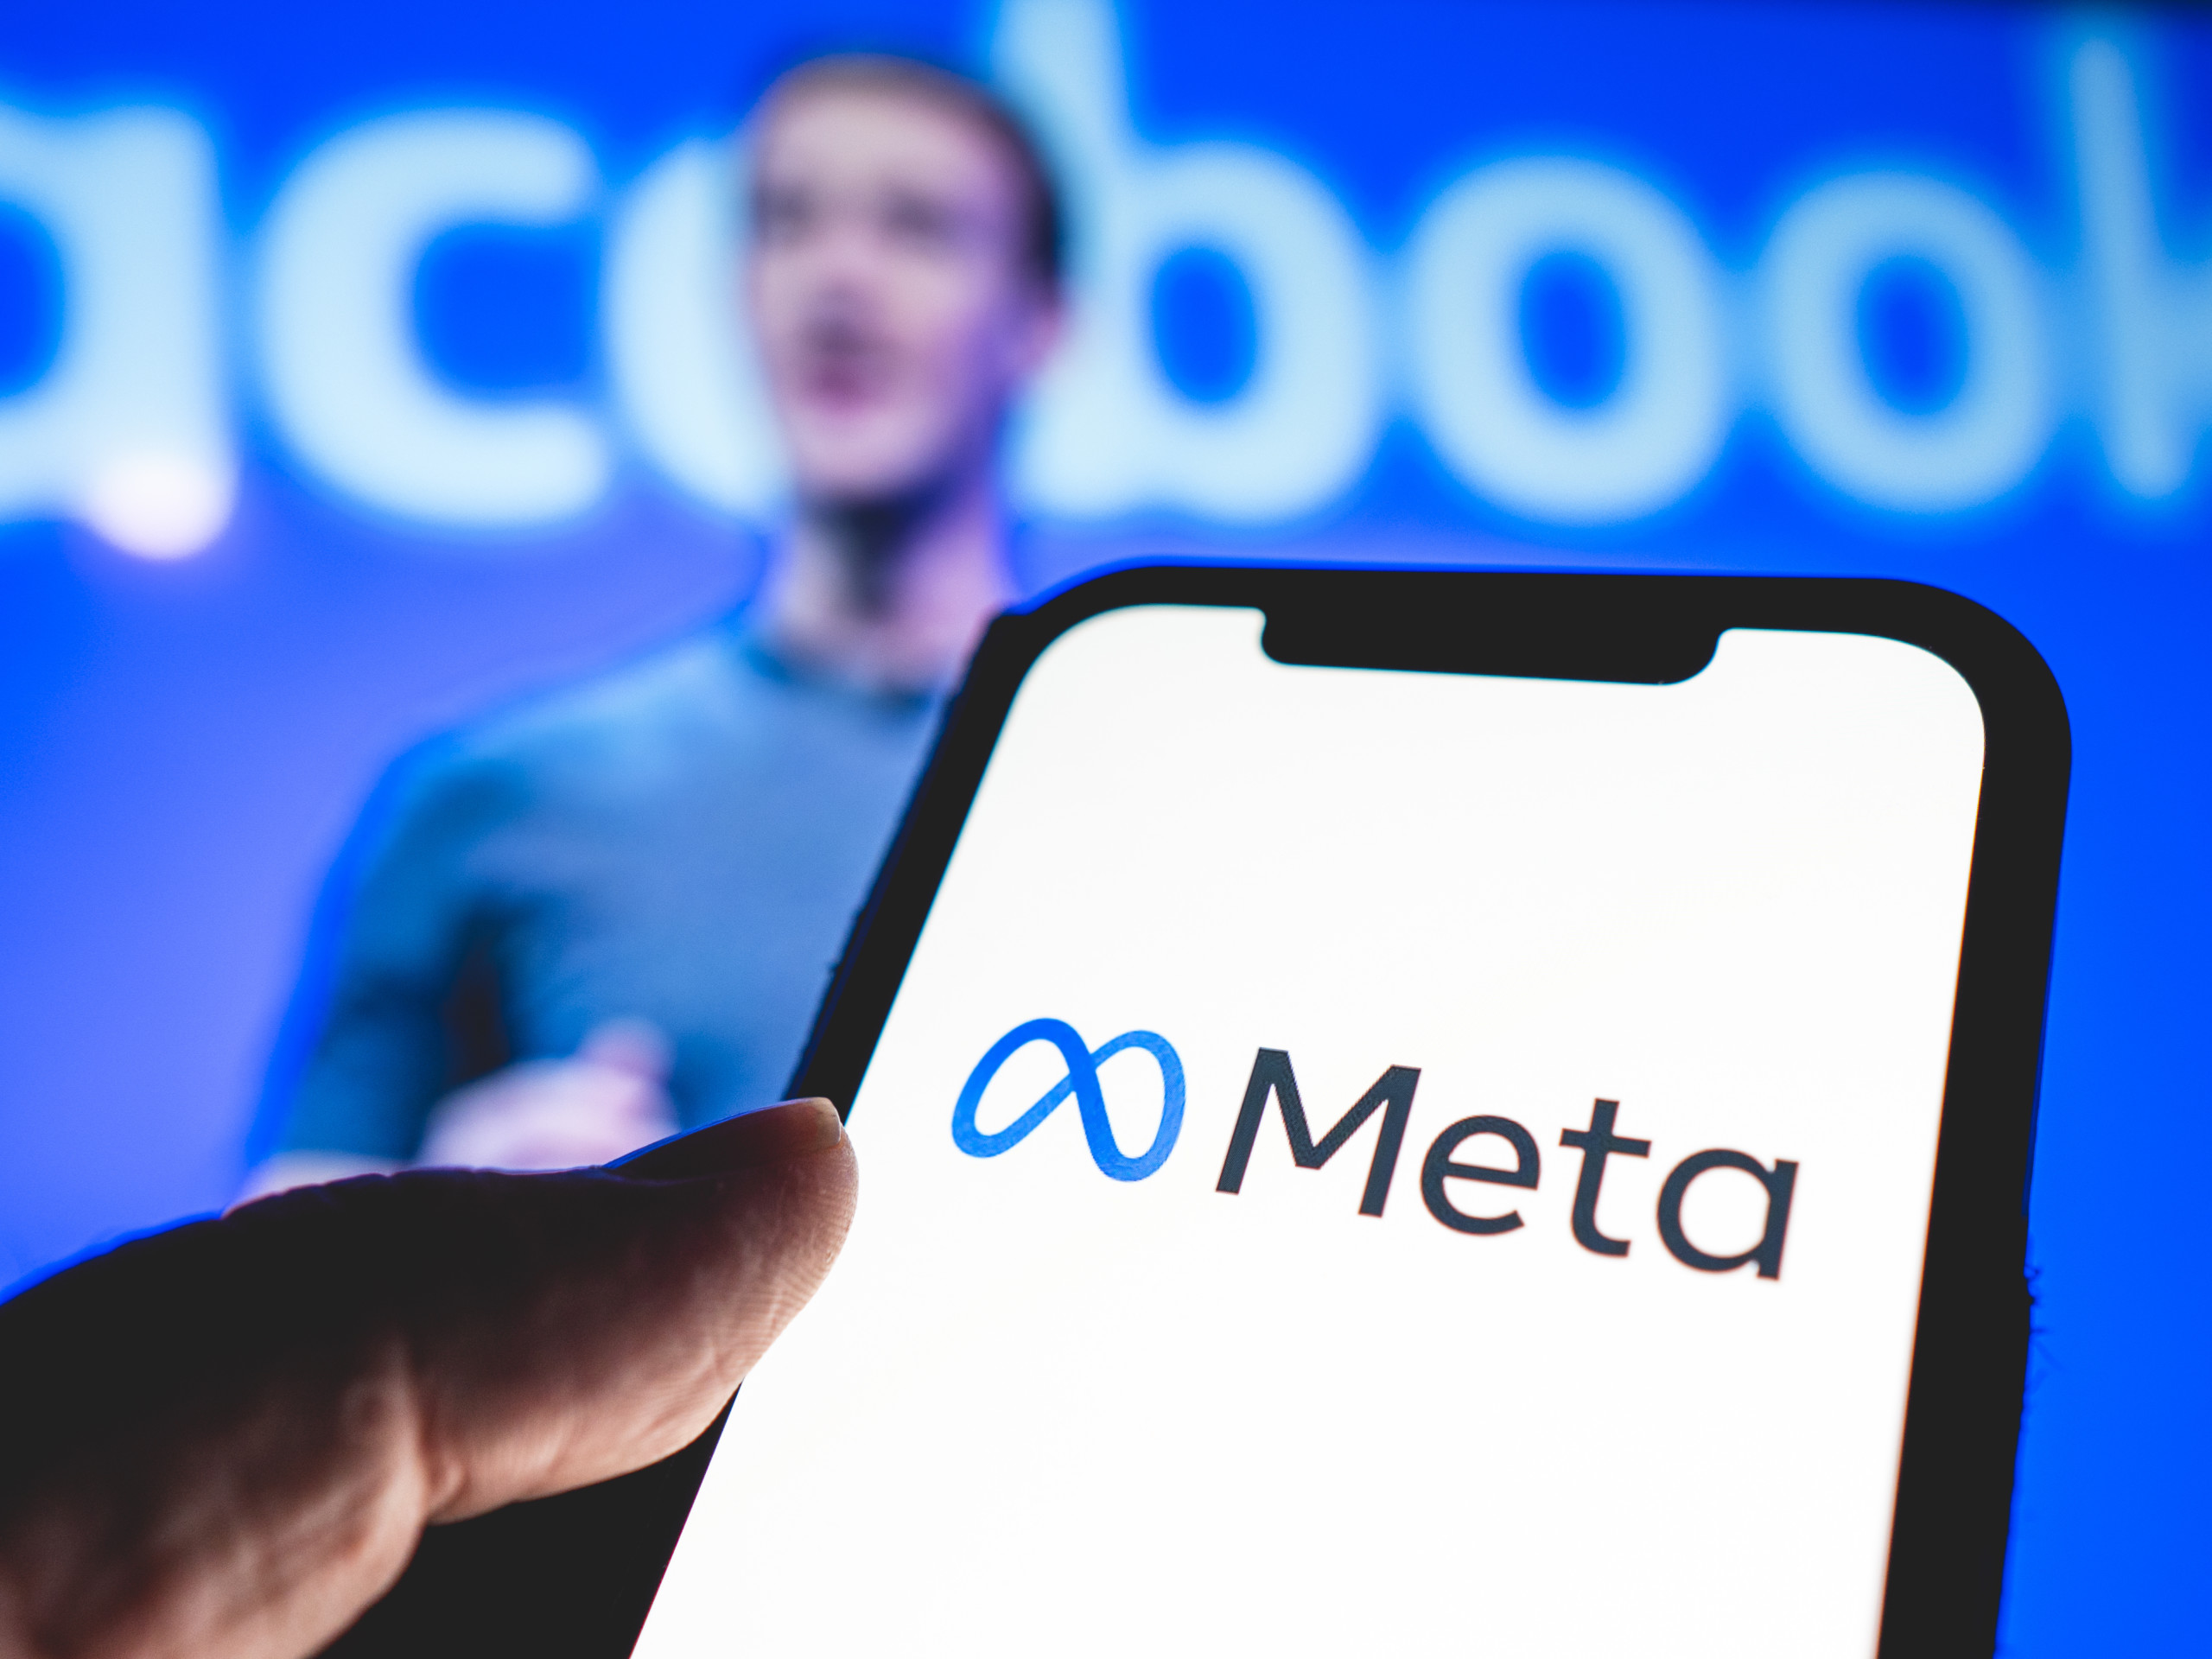 Social-Media-Konzern Meta entwickelt gigantisches KI-Modell zur Steuerung seines gesamten Video-Ökosystems